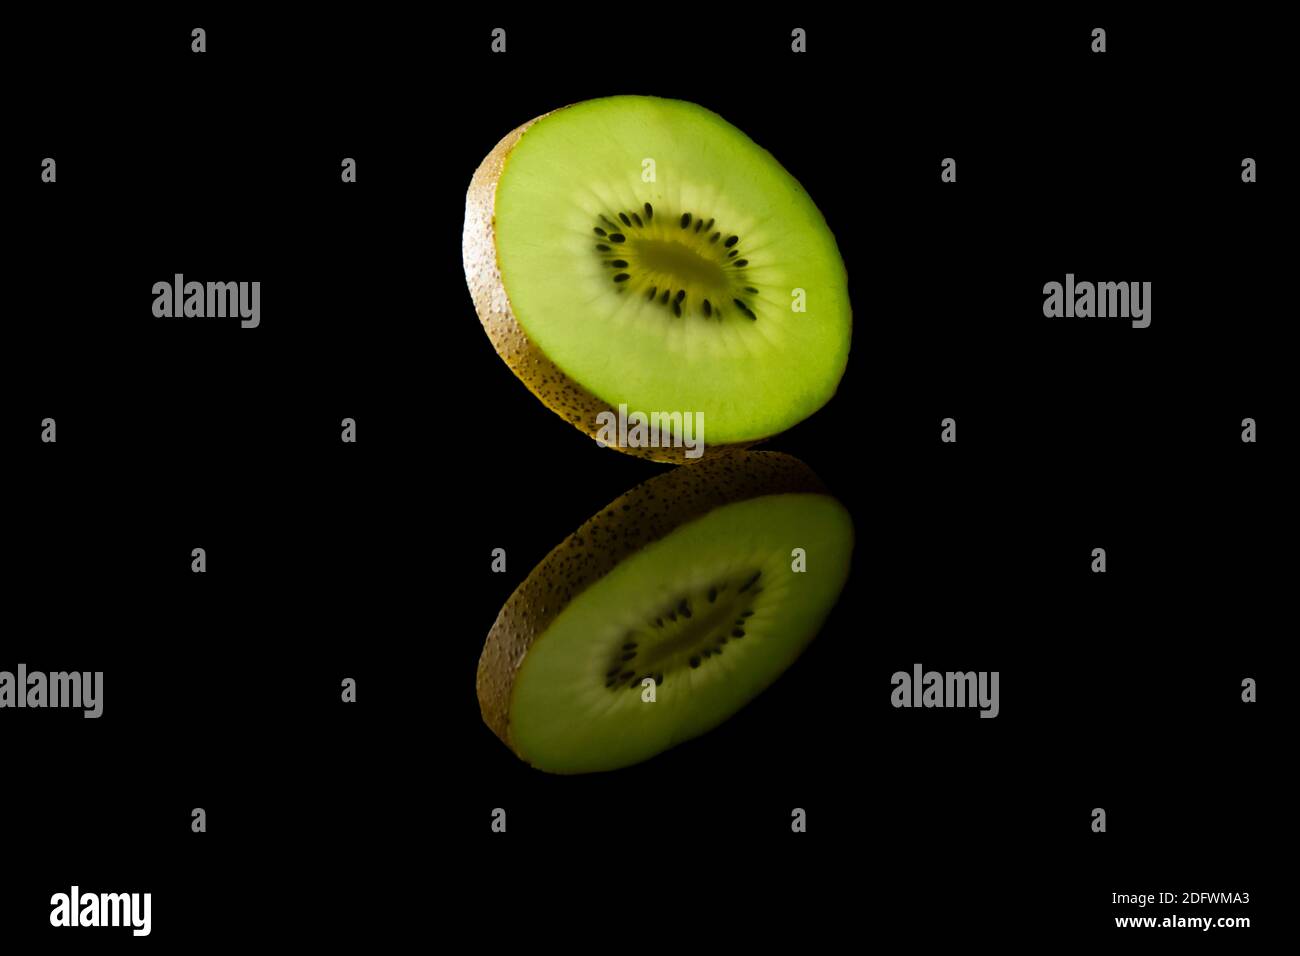 Scheibe grüne Kiwi-Frucht vor schwarzem Hintergrund Stockfoto